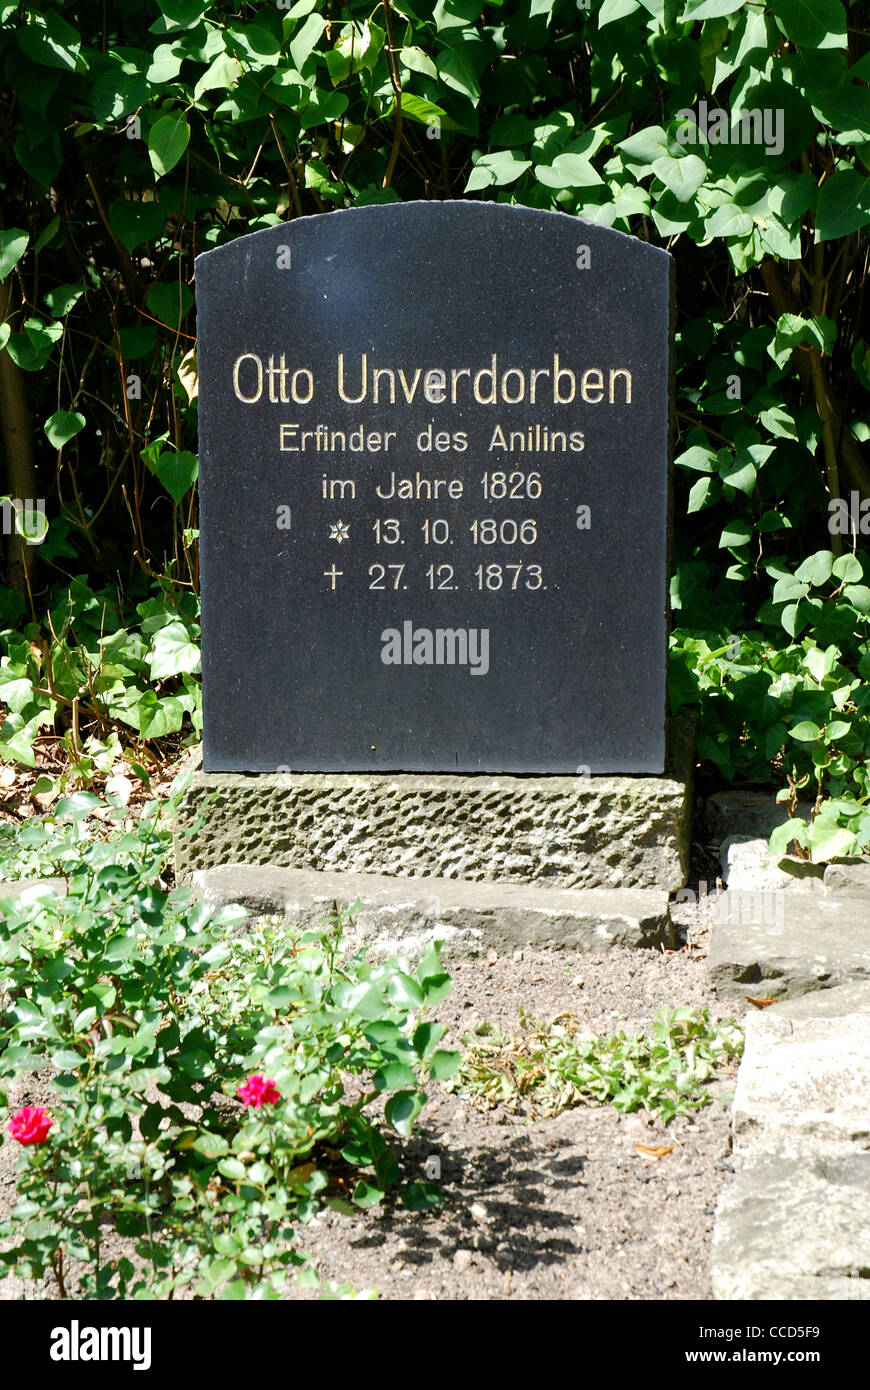 Grave of the aniline inventor Otto Unverdorben in Dahme in the Mark Brandenburg. Stock Photo